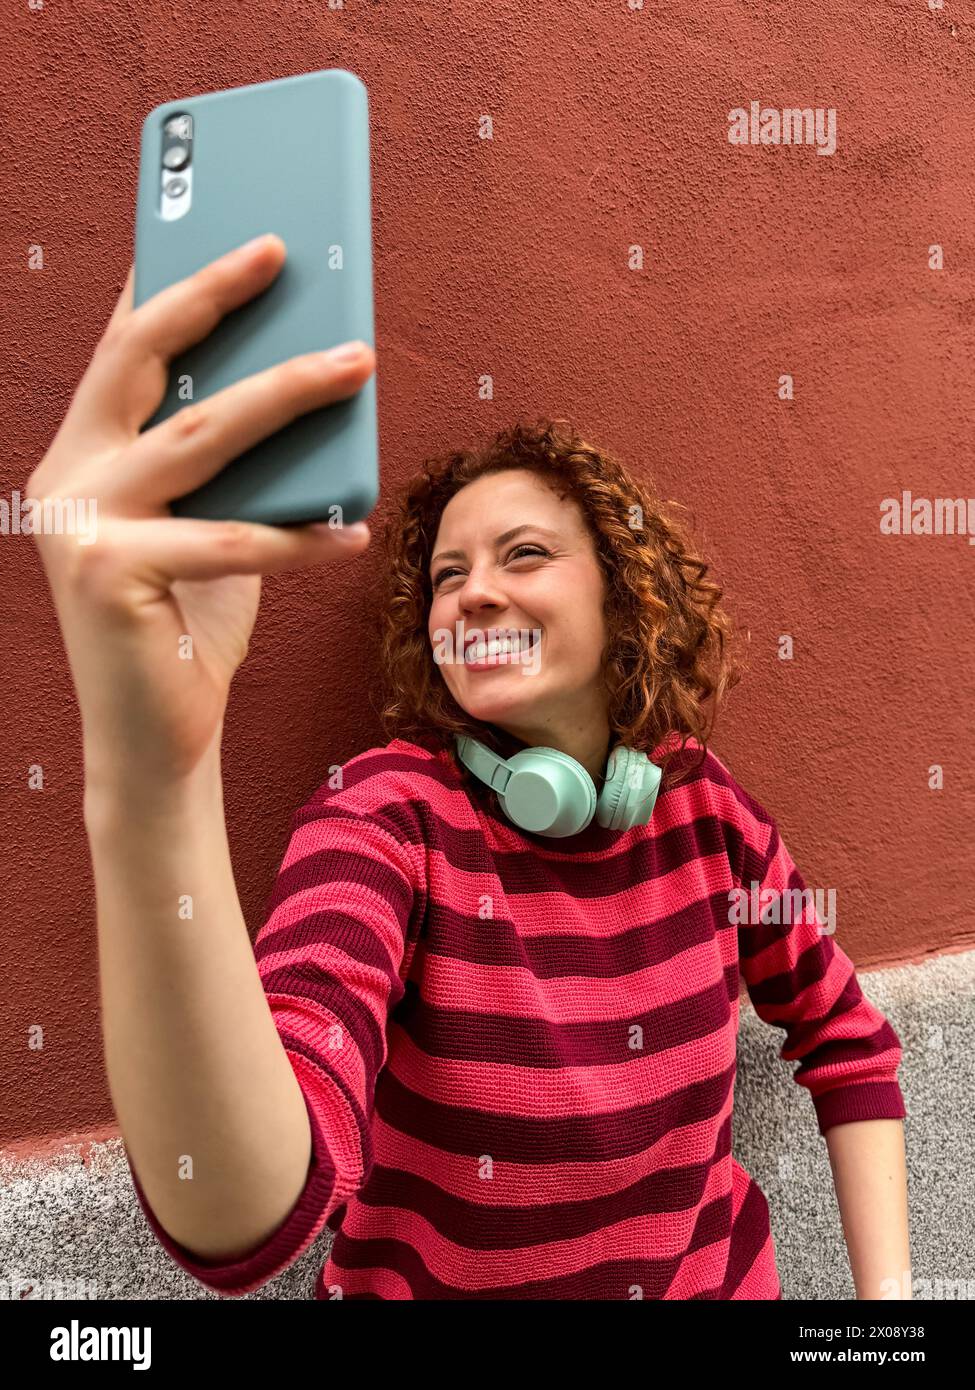 Una donna rossa allegra con i capelli ricci sorride mentre scatta un selfie, indossando una camicia a righe e cuffie intorno al collo Foto Stock